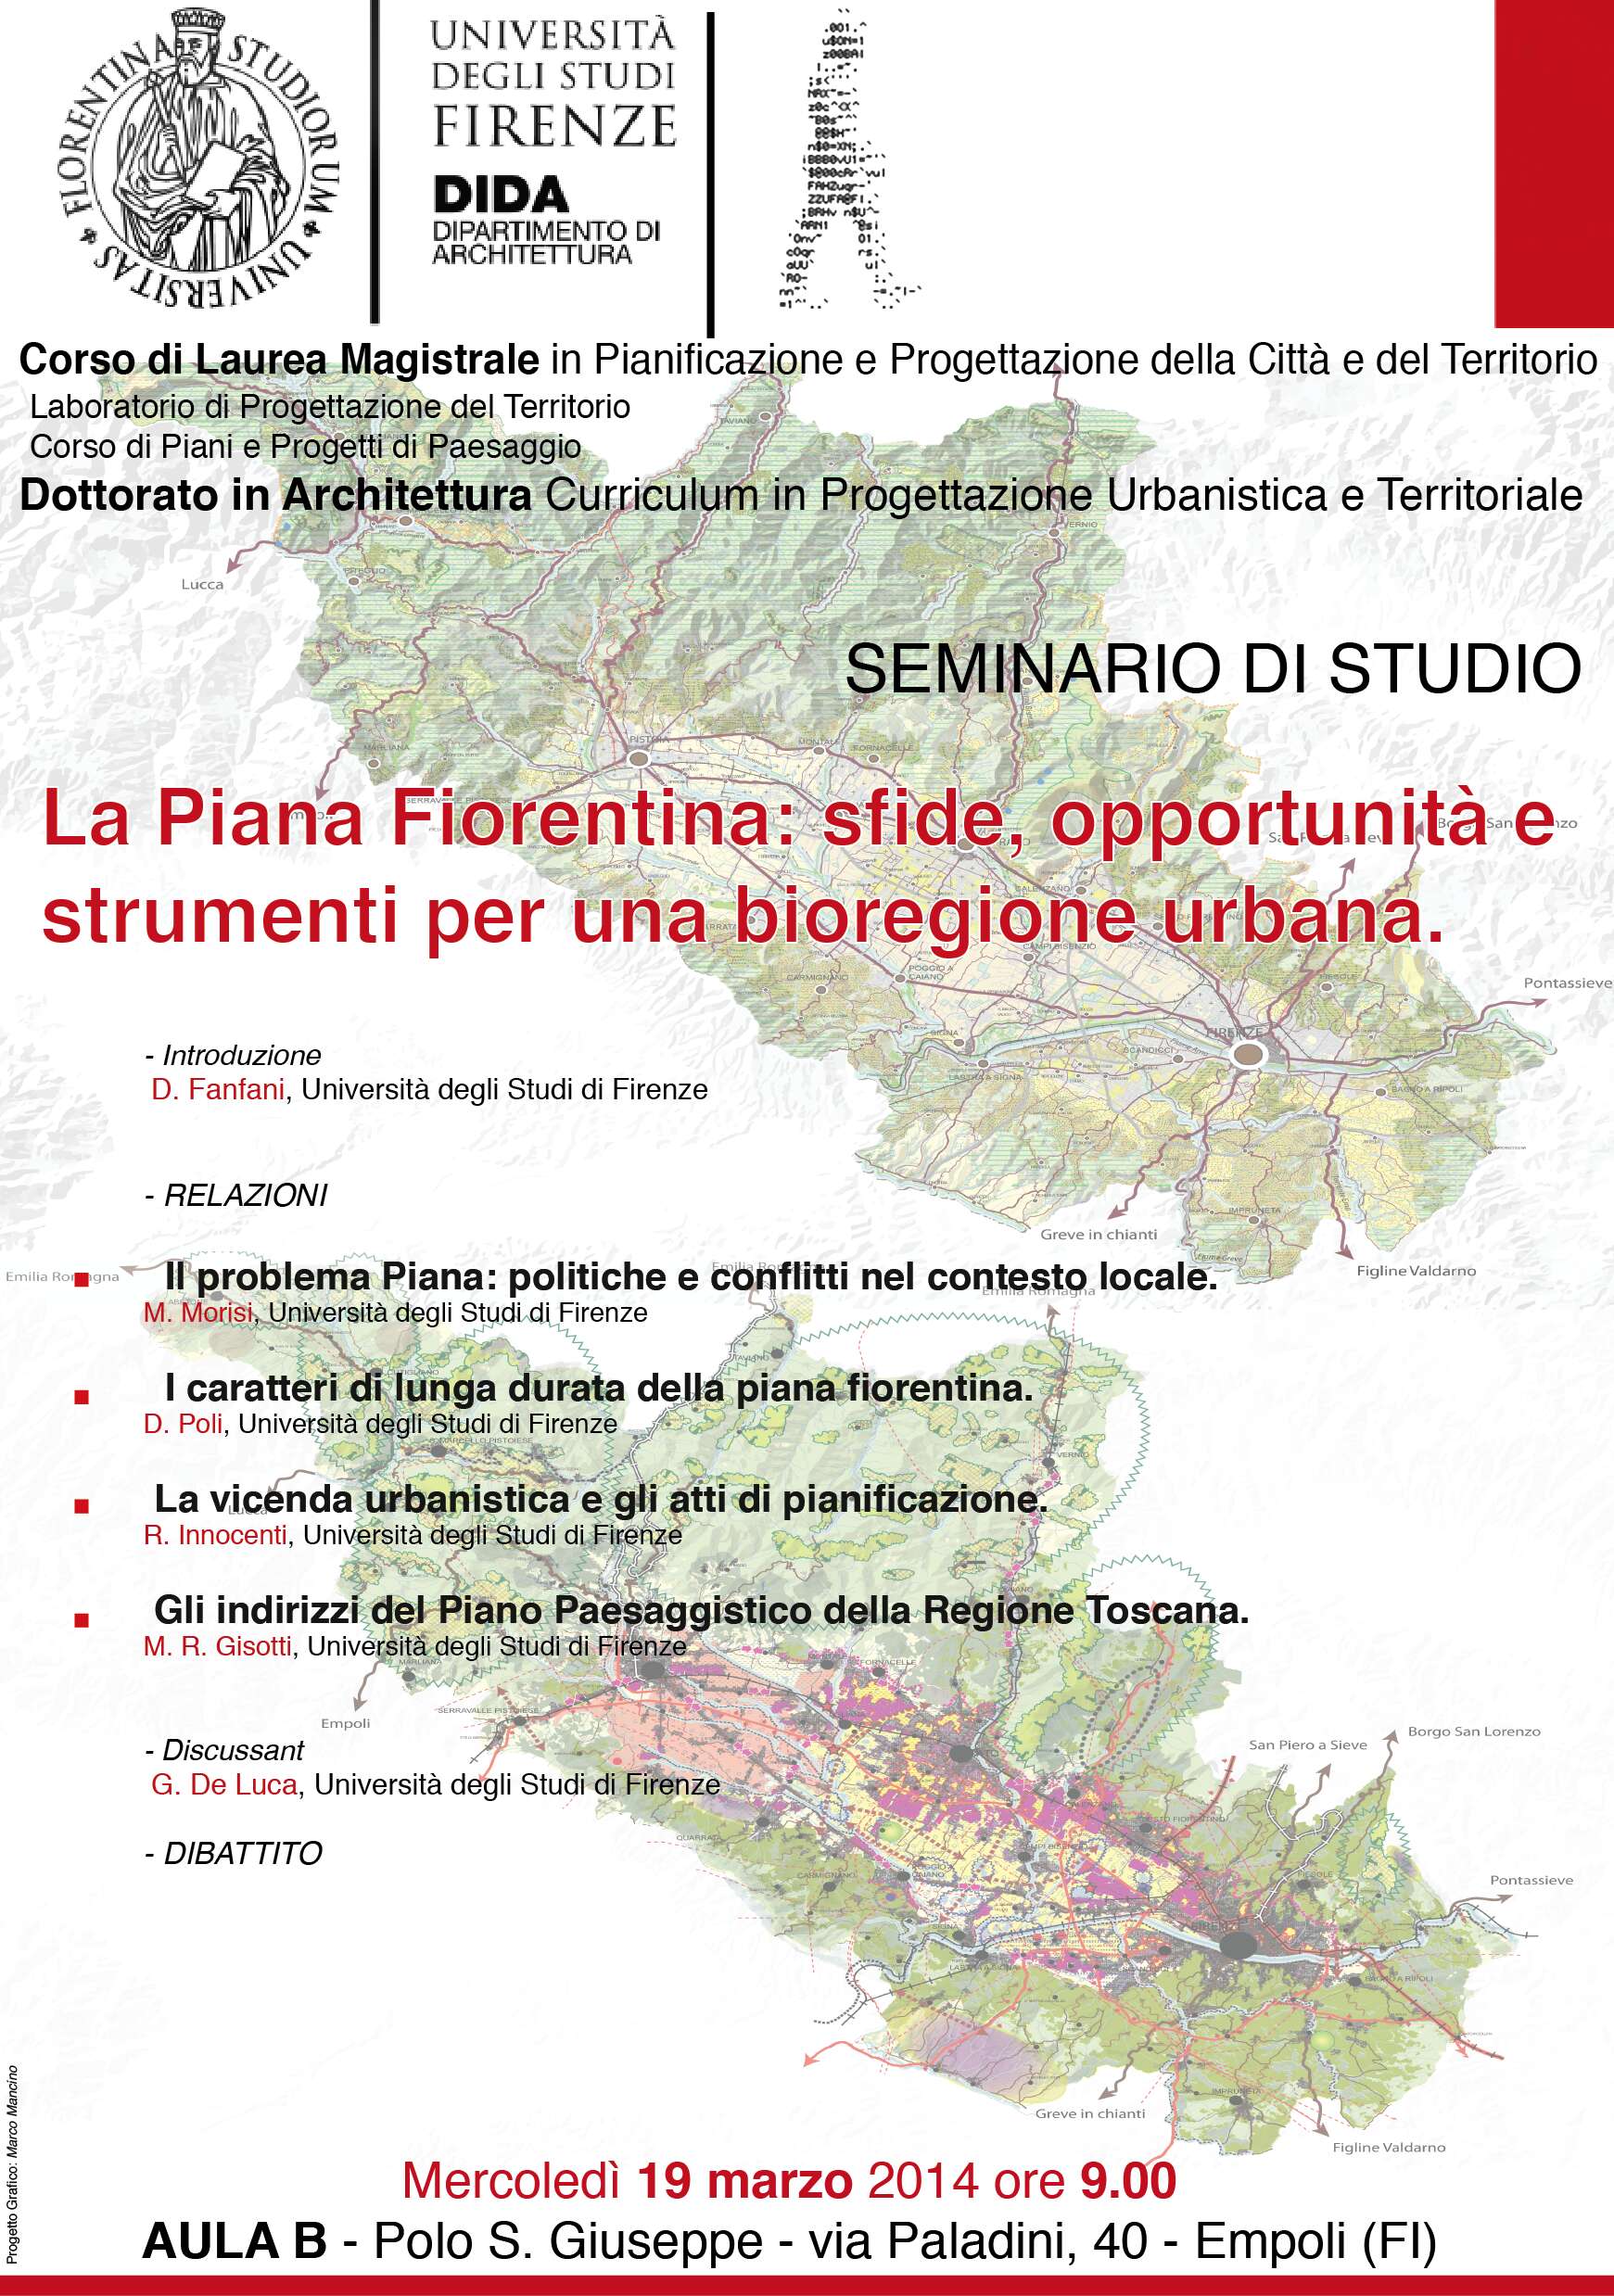 La piana fiorentina: sfide, opportunità e strumenti per una bioregione urbana.